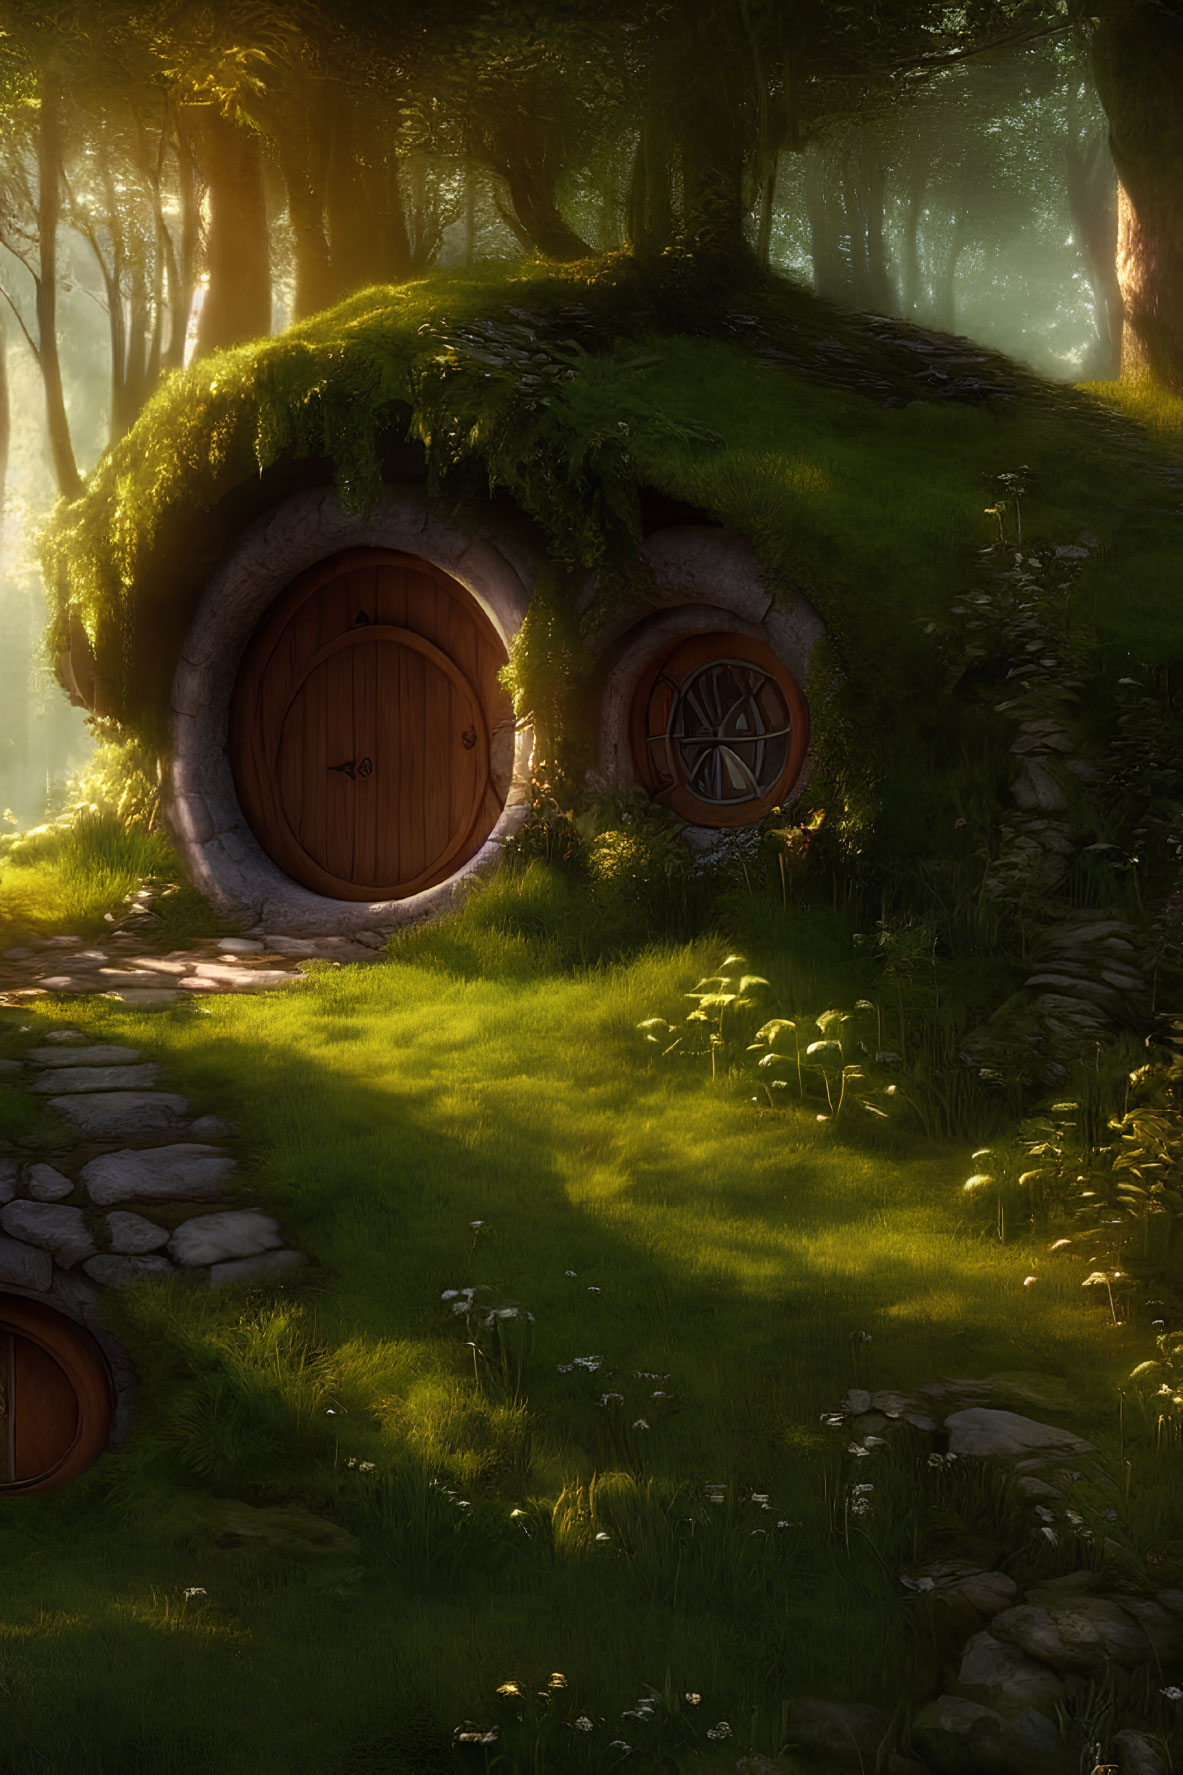 Whimsical hobbit-style house in lush woodland setting